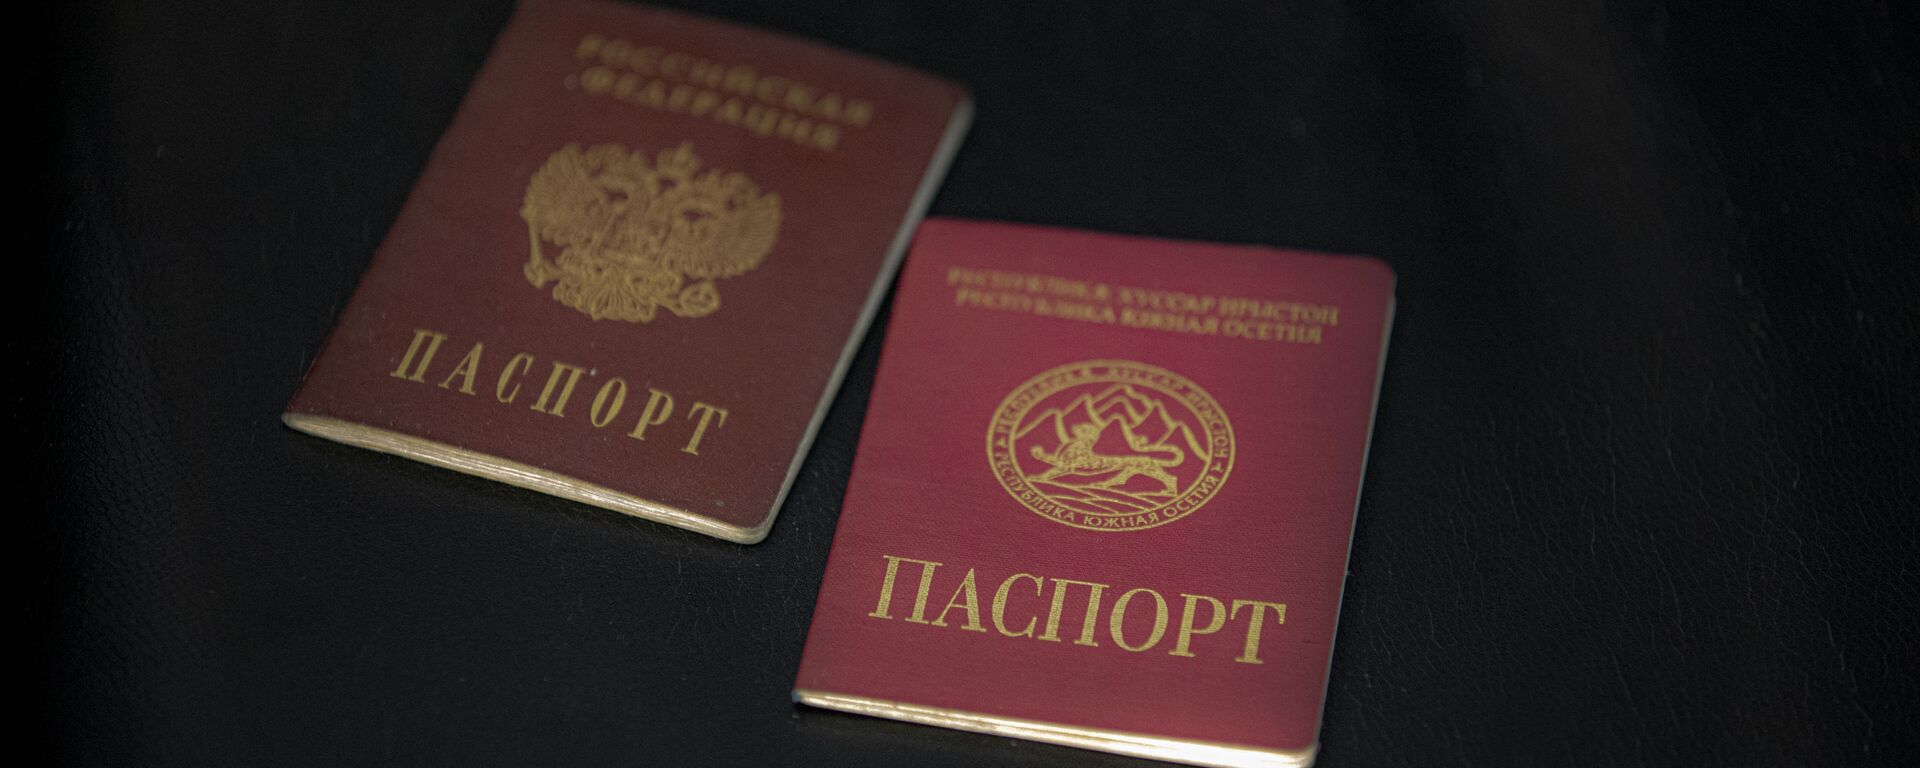 Паспорт РФ и паспорт Южной Осетии - Sputnik Южная Осетия, 1920, 04.08.2021